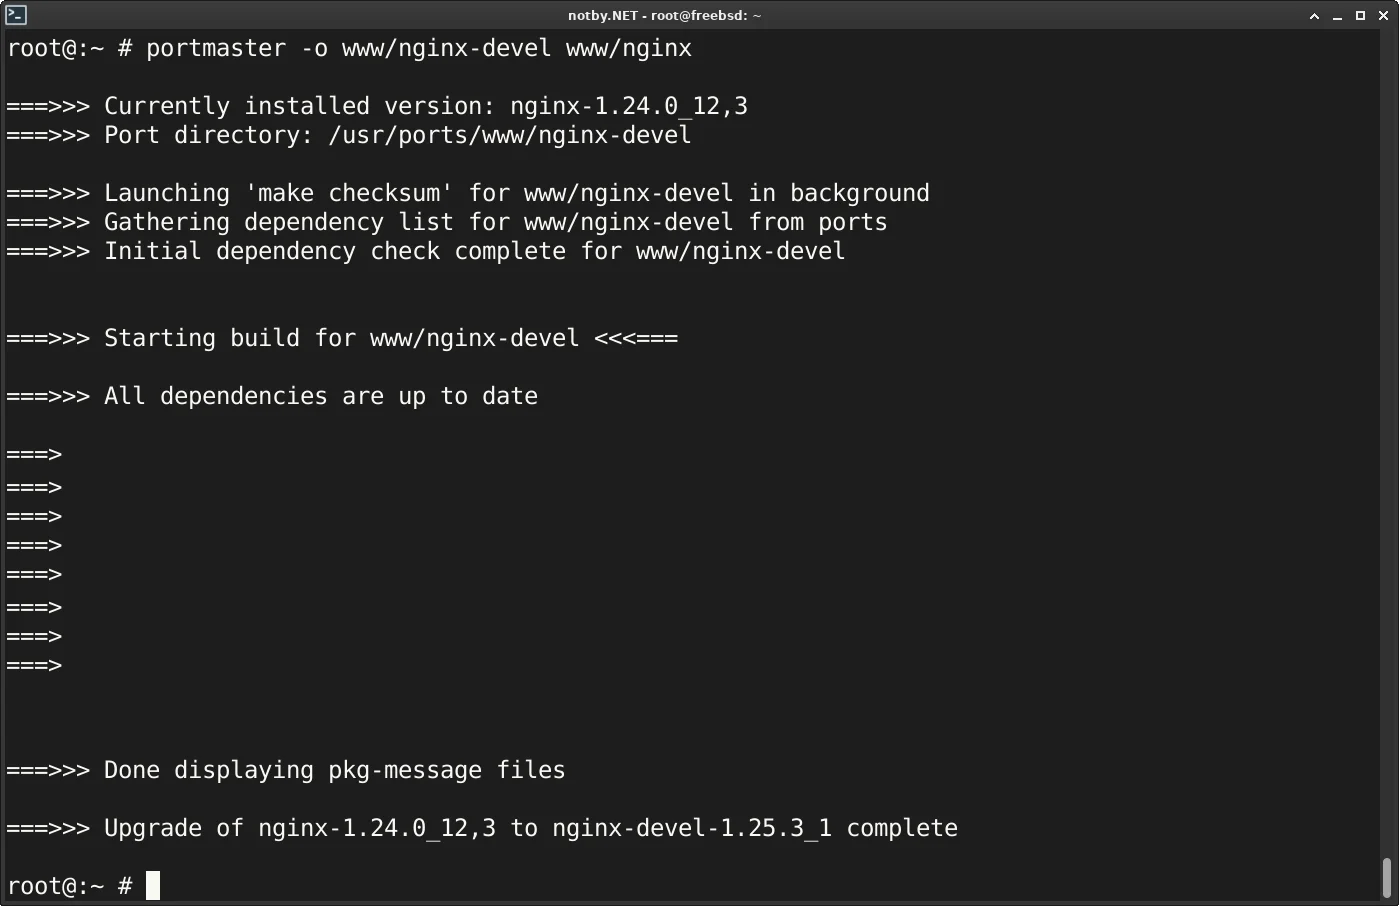 Выполнение команды "portmaster -o www/nginx-devel www/nginx" успешно, nginx был заменен на версию порта nginx-devel 